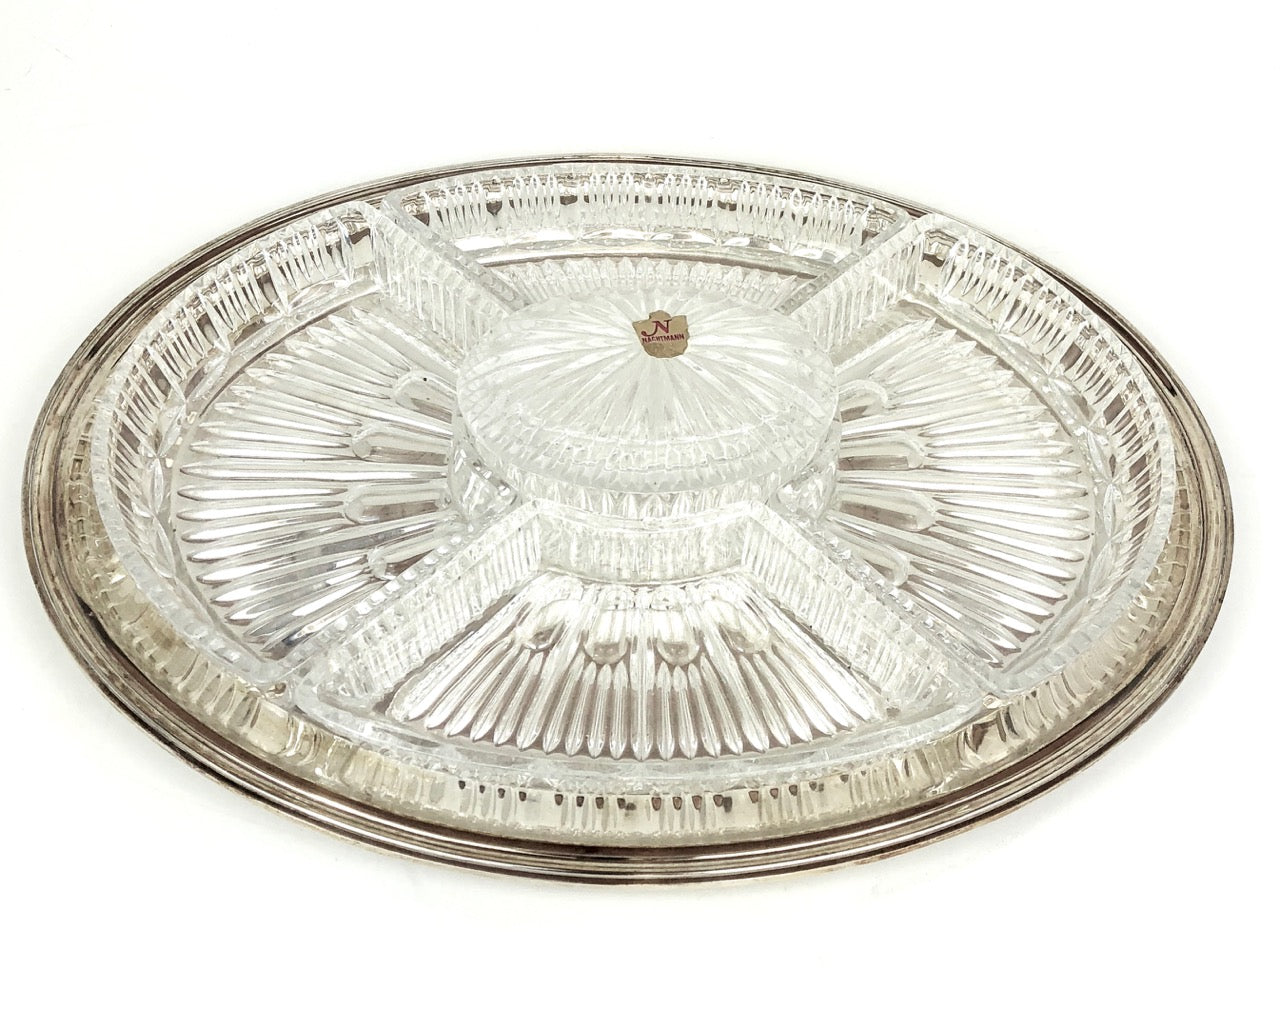 Antipastiera ovale in argento '800 cristallo anni 50 Ricci-Cristalli Nachtmann Bleikristall